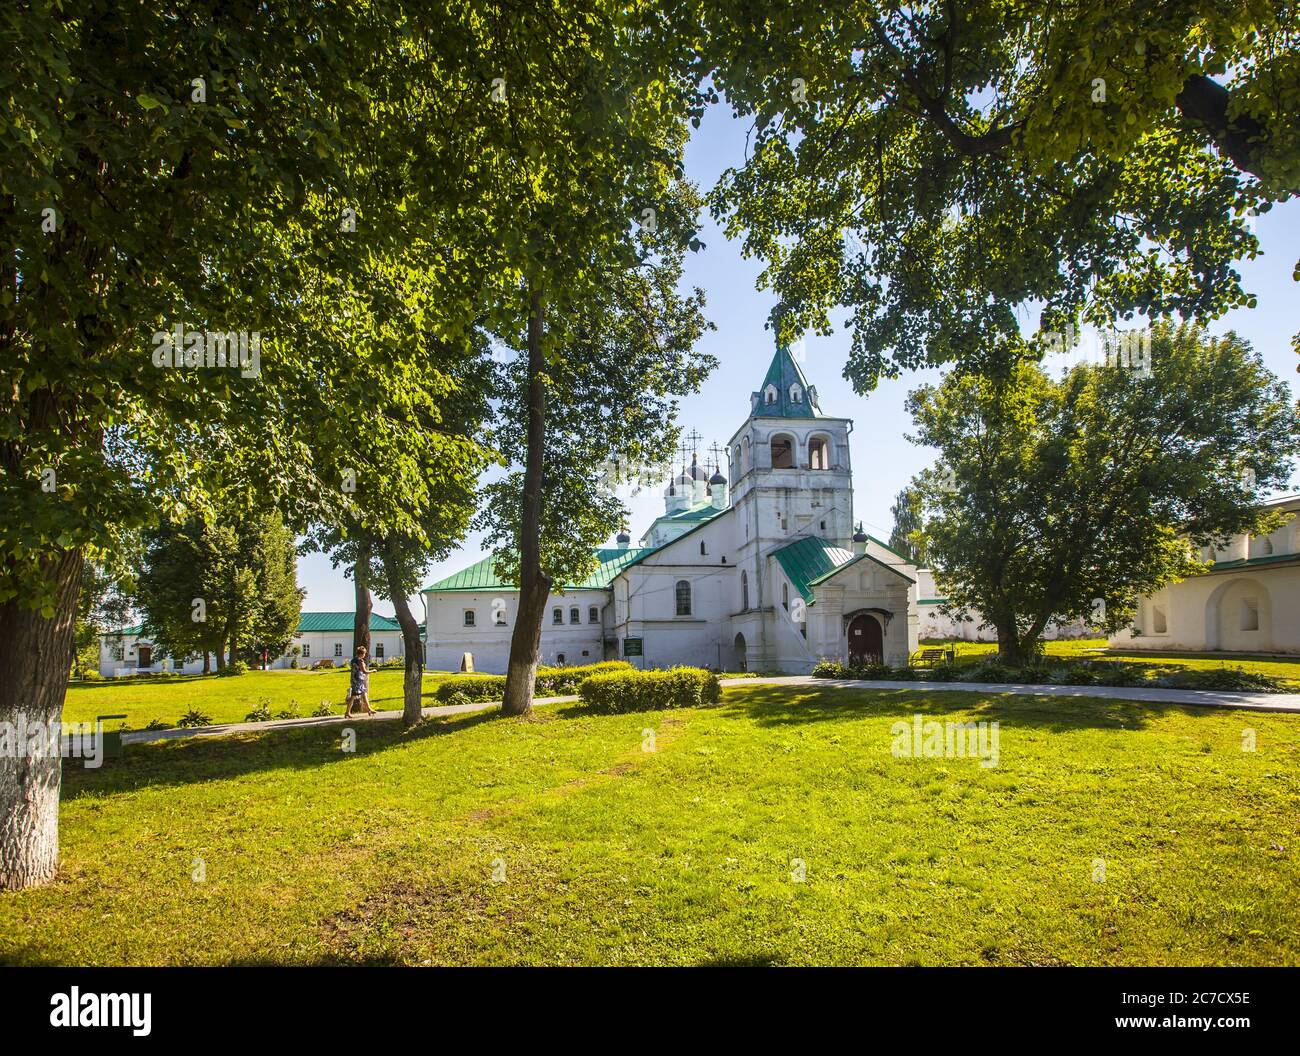 Schöne Aufnahme des Klosters in der Nähe von Bäumen am Tag in der Stadt Alexandrow bei Russland Stockfoto